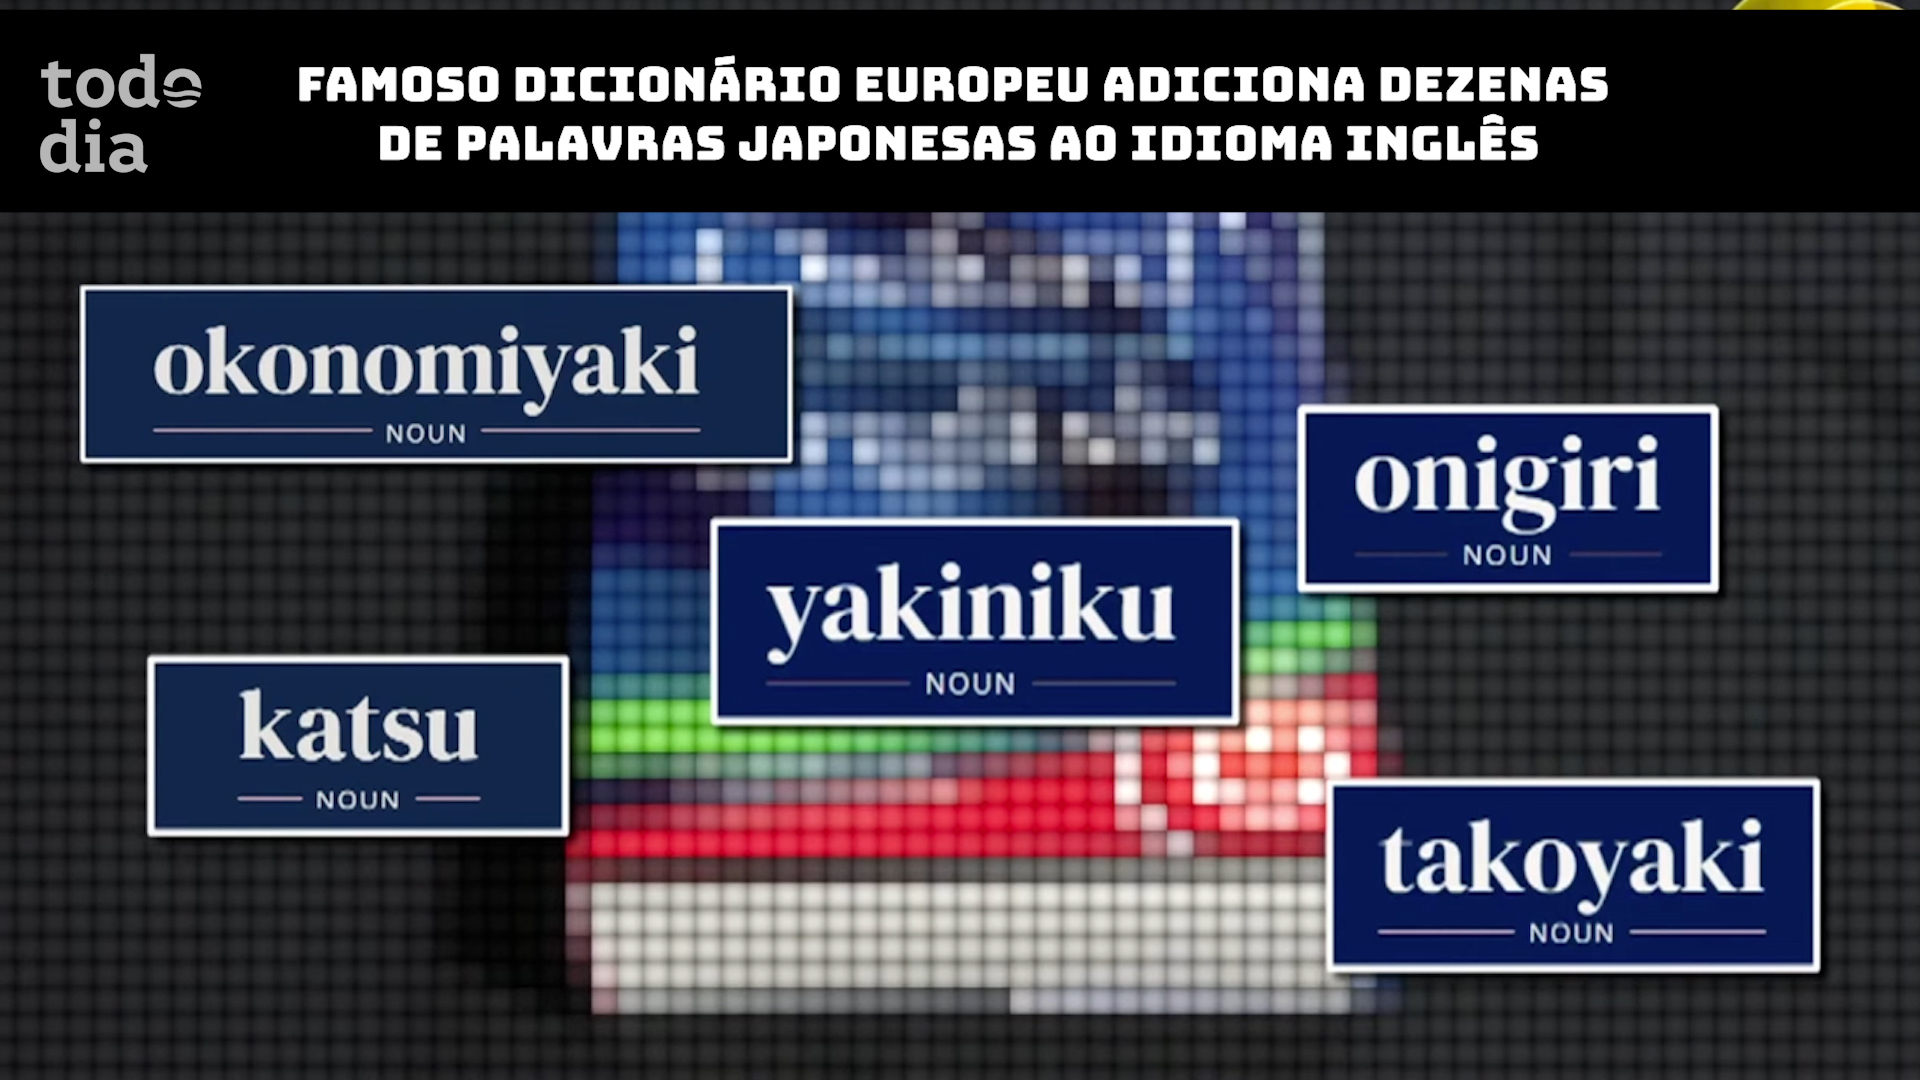 Famoso dicionário europeu adiciona dezenas de palavras japonesas ao idioma inglês